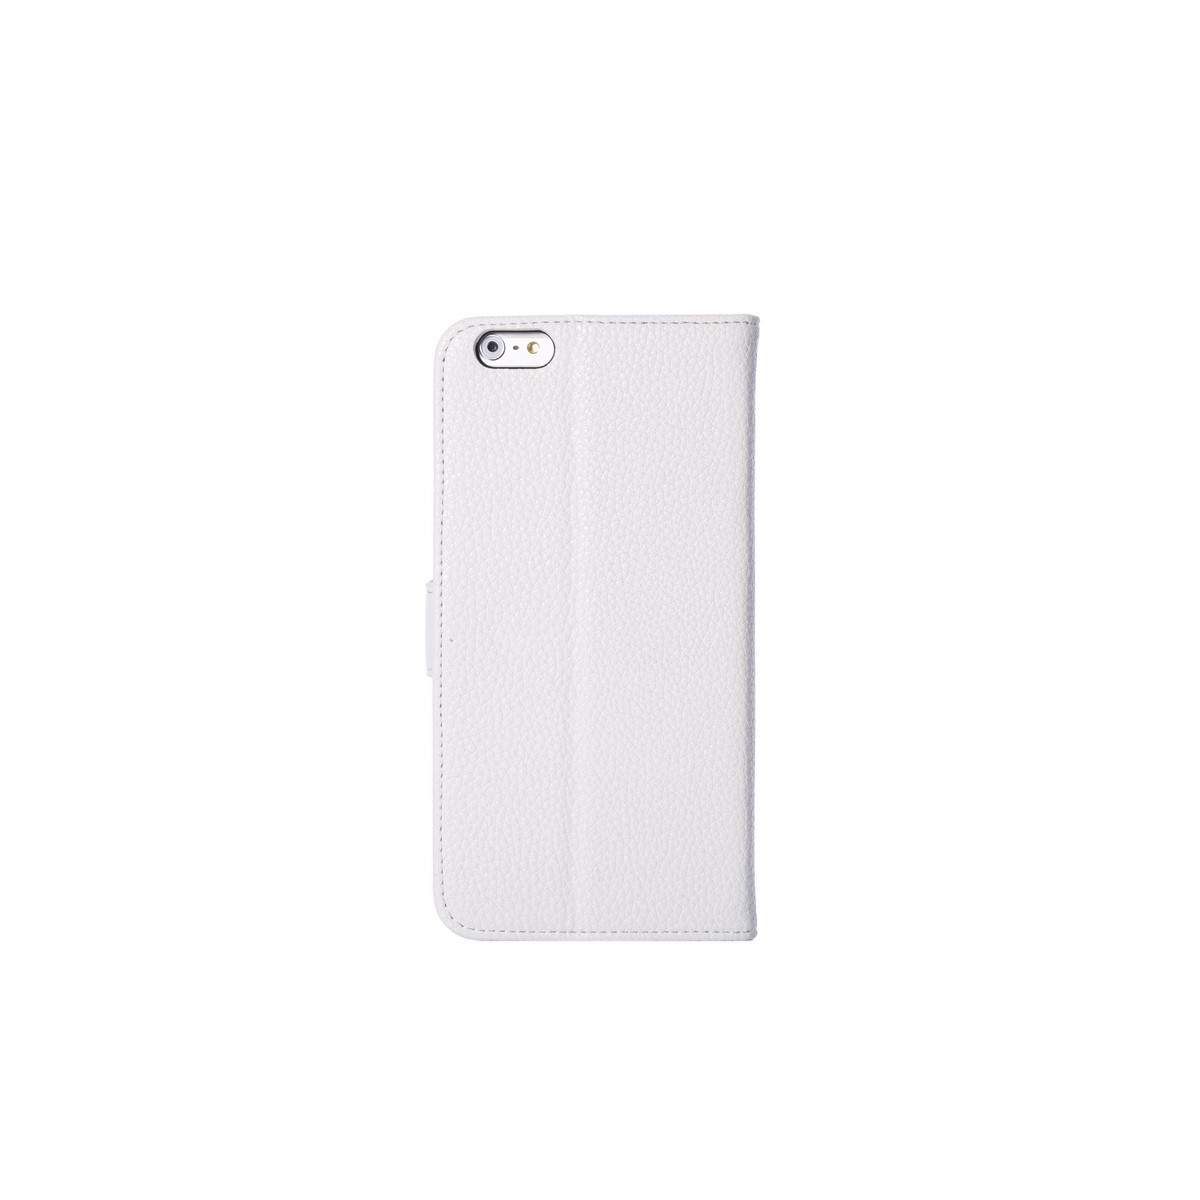 Etui porte feuille iPhone 6 Plus 5.5 avec porte carte blanc